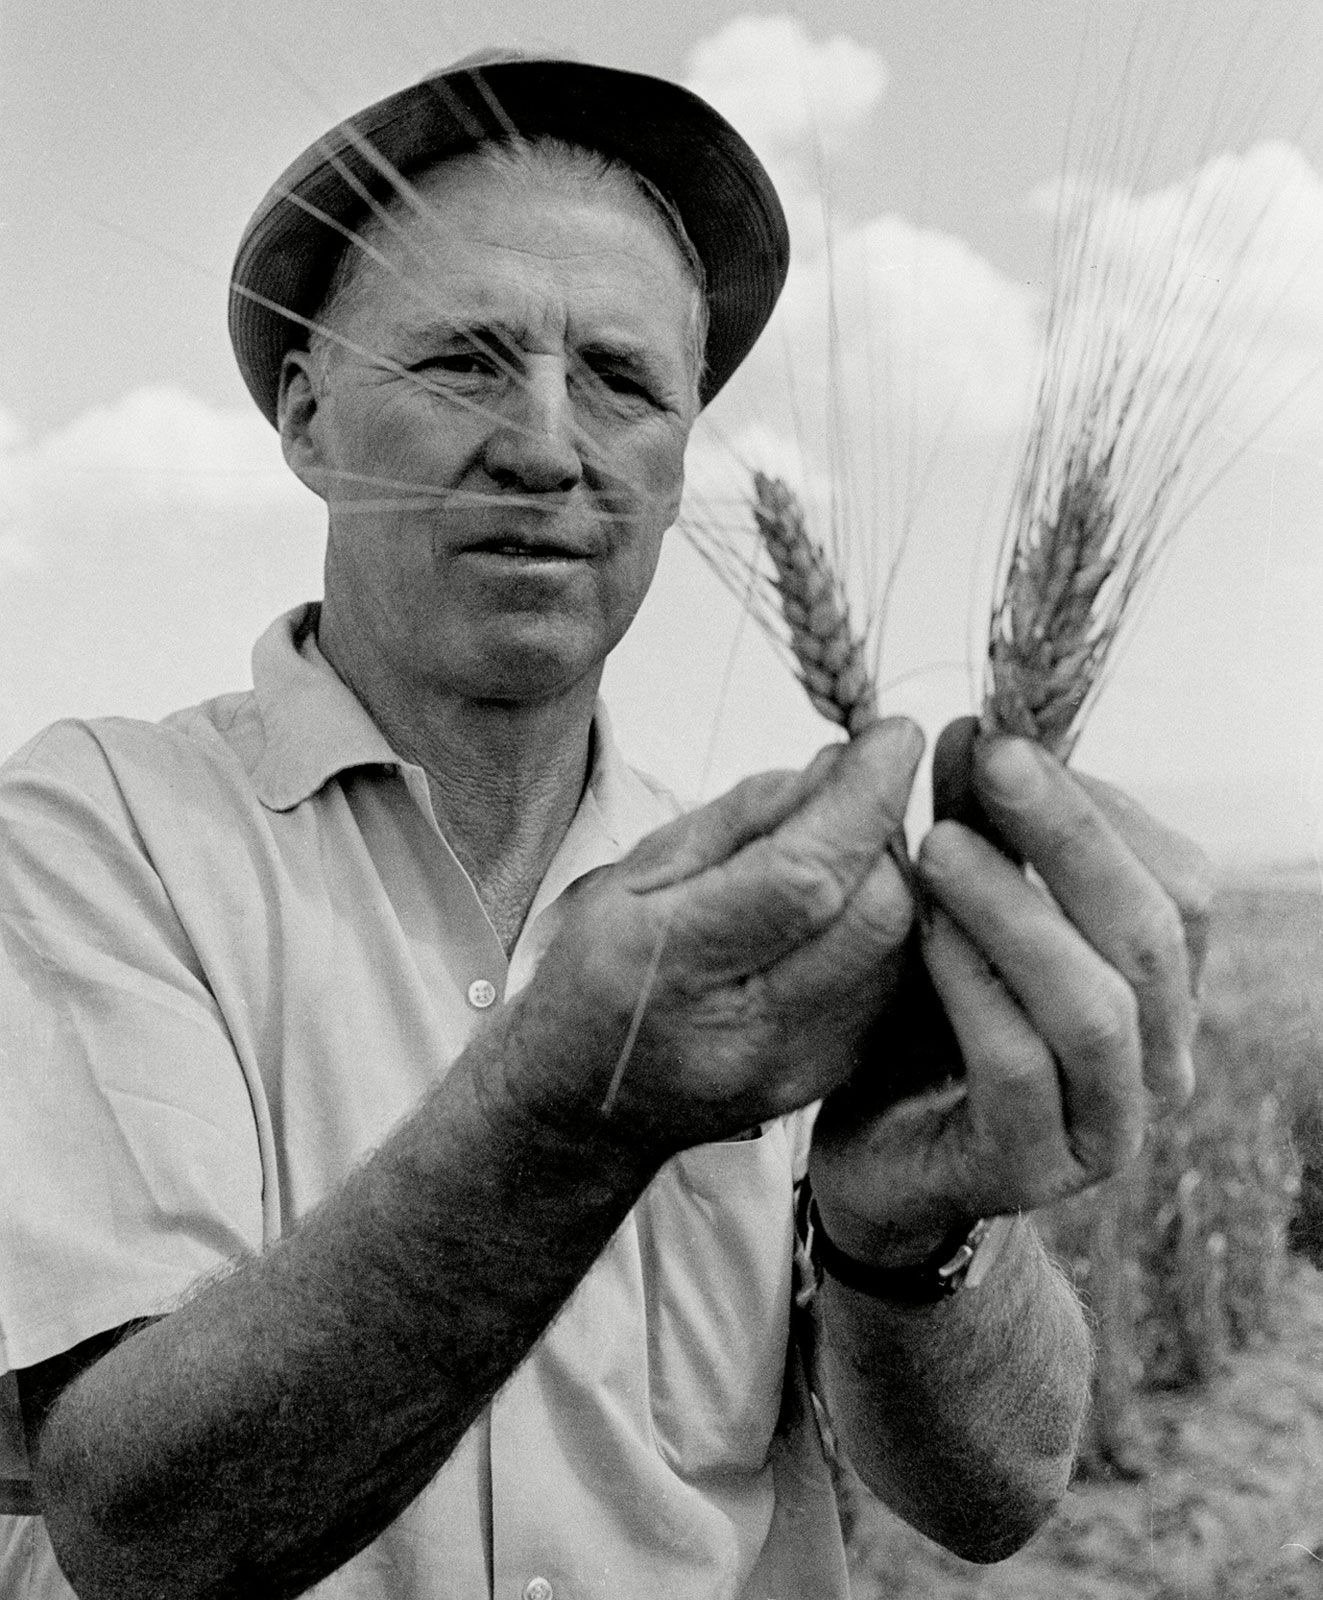 Tiến sĩ Norman Borlaug đứng giữa cánh đồng lúa mì mà ông đã trồng trong Cách Mạng Xanh tại Toluca, Mexico năm 1970. Đây cũng là năm ông nhận được giải Nobel Hòa Bình. Ông được ghi nhận là người đã cứu hơn một tỷ người trên thế giới khỏi nạn đói. Ảnh: Bettmann/CORBIS.